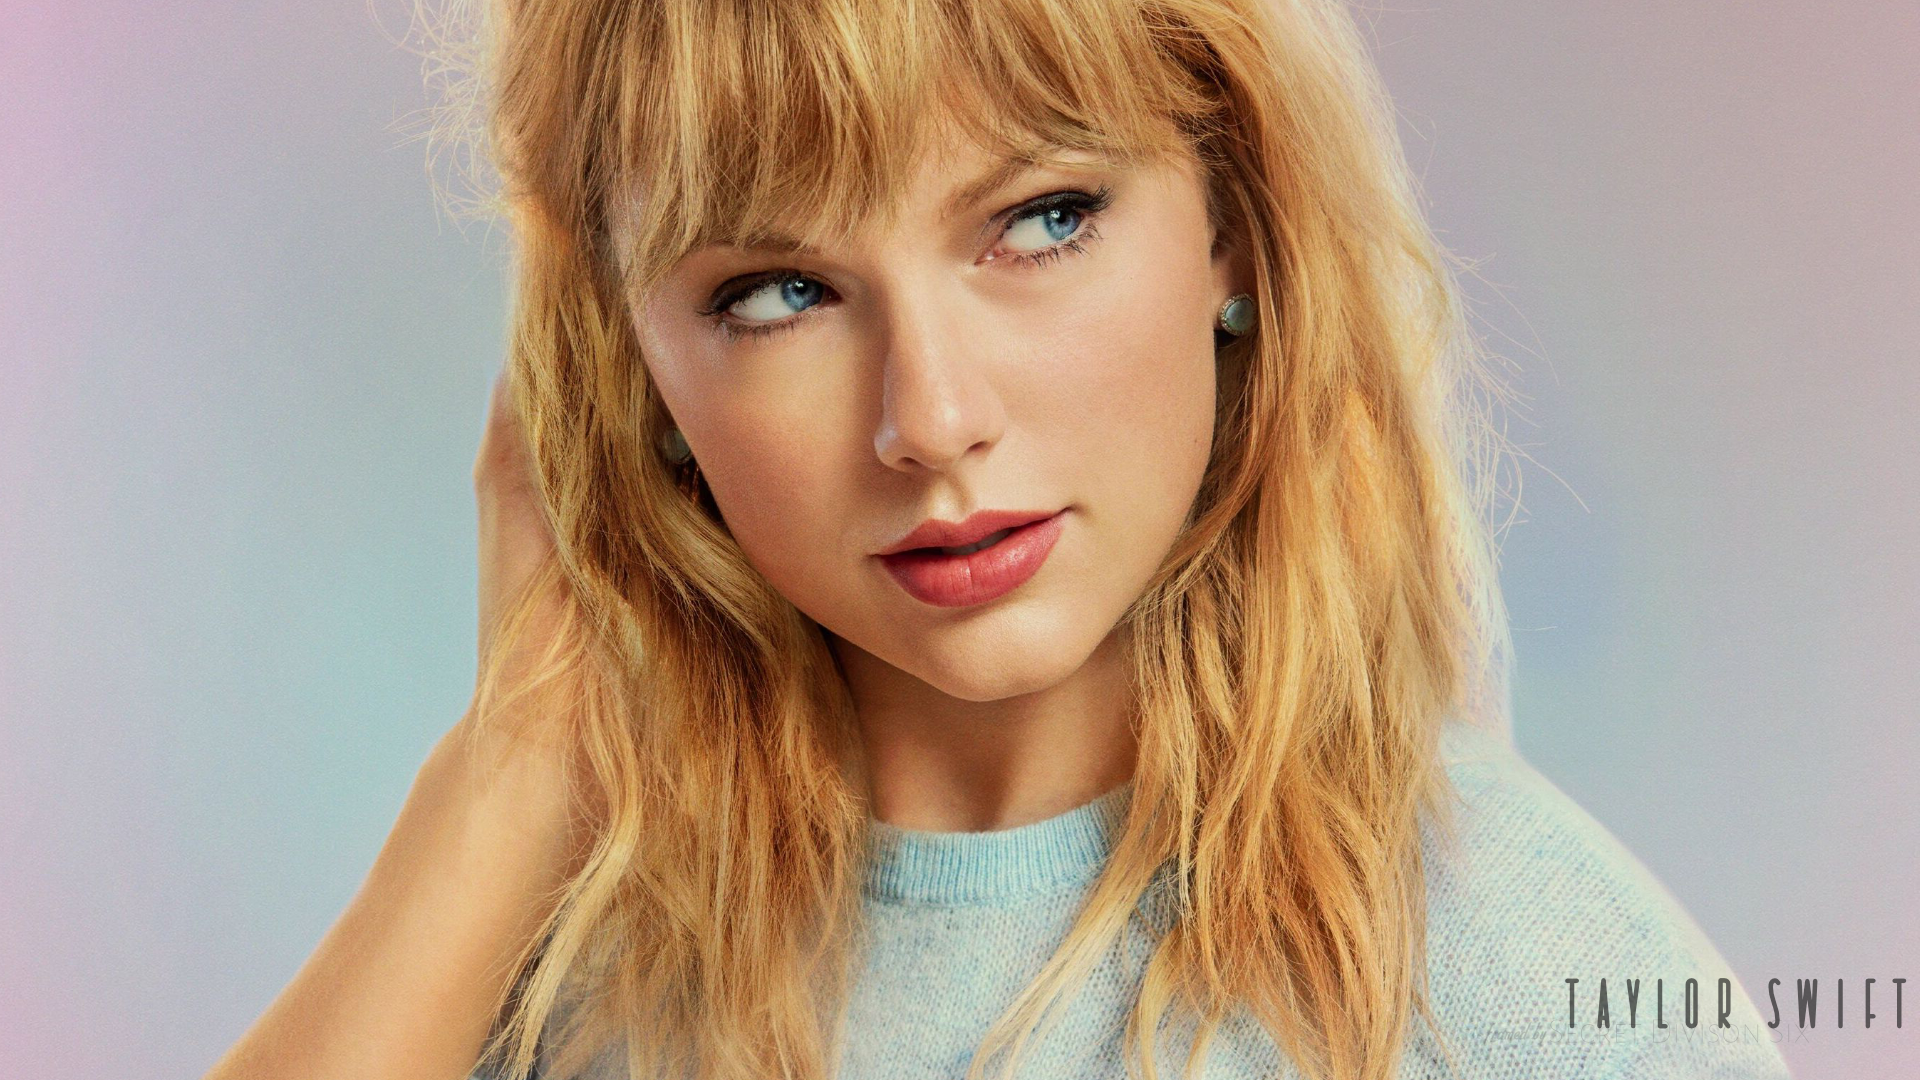 Taylor Swift Singer Women 1920x1080